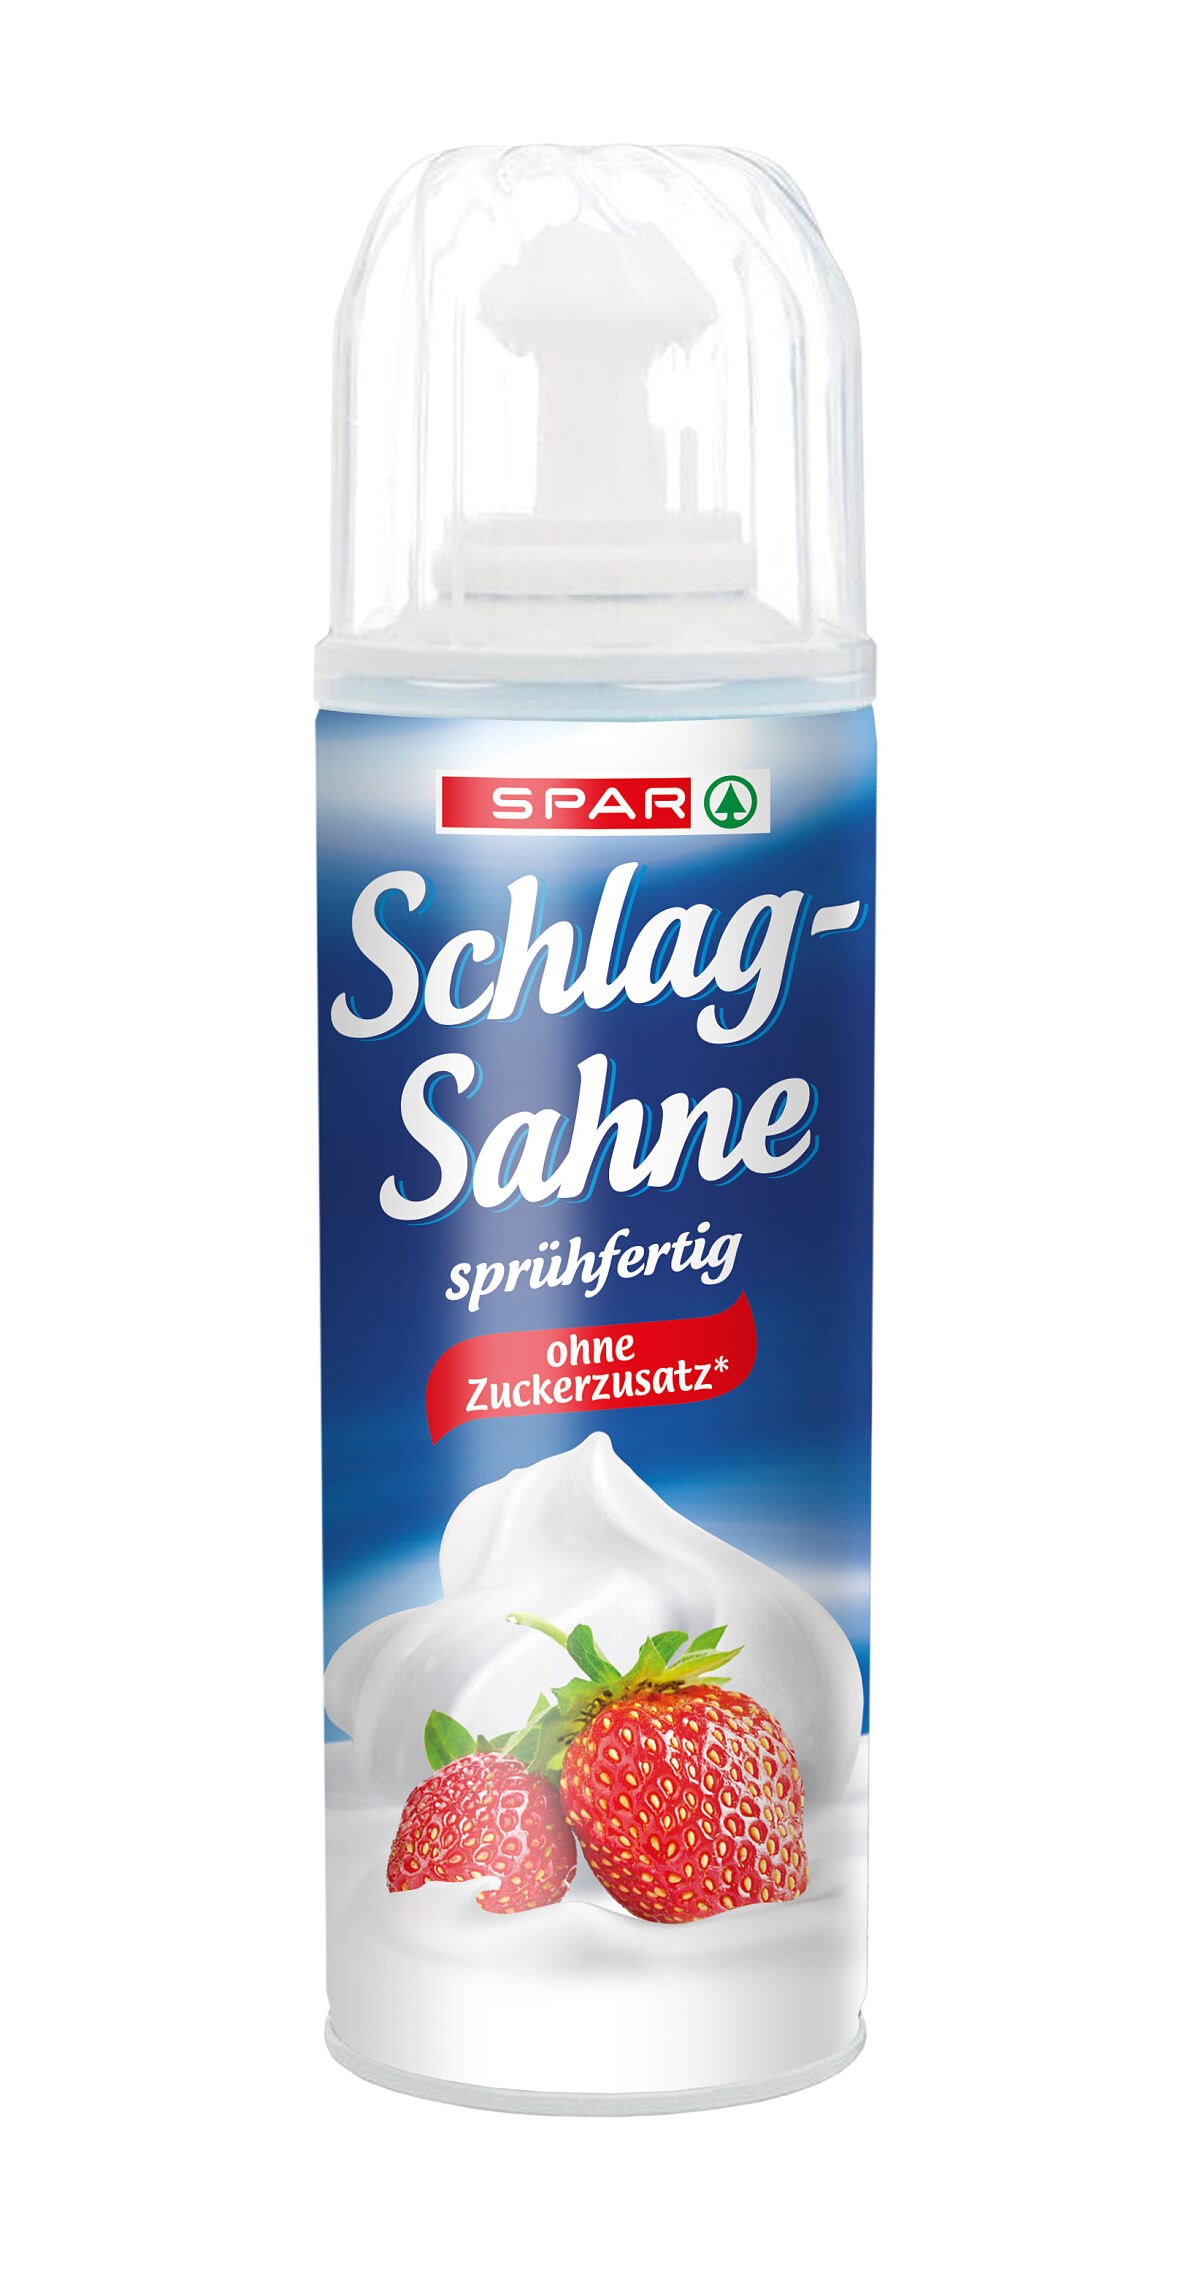 SPAR Schlag-Sahne sprühfertig ohne Zuckerzusatz